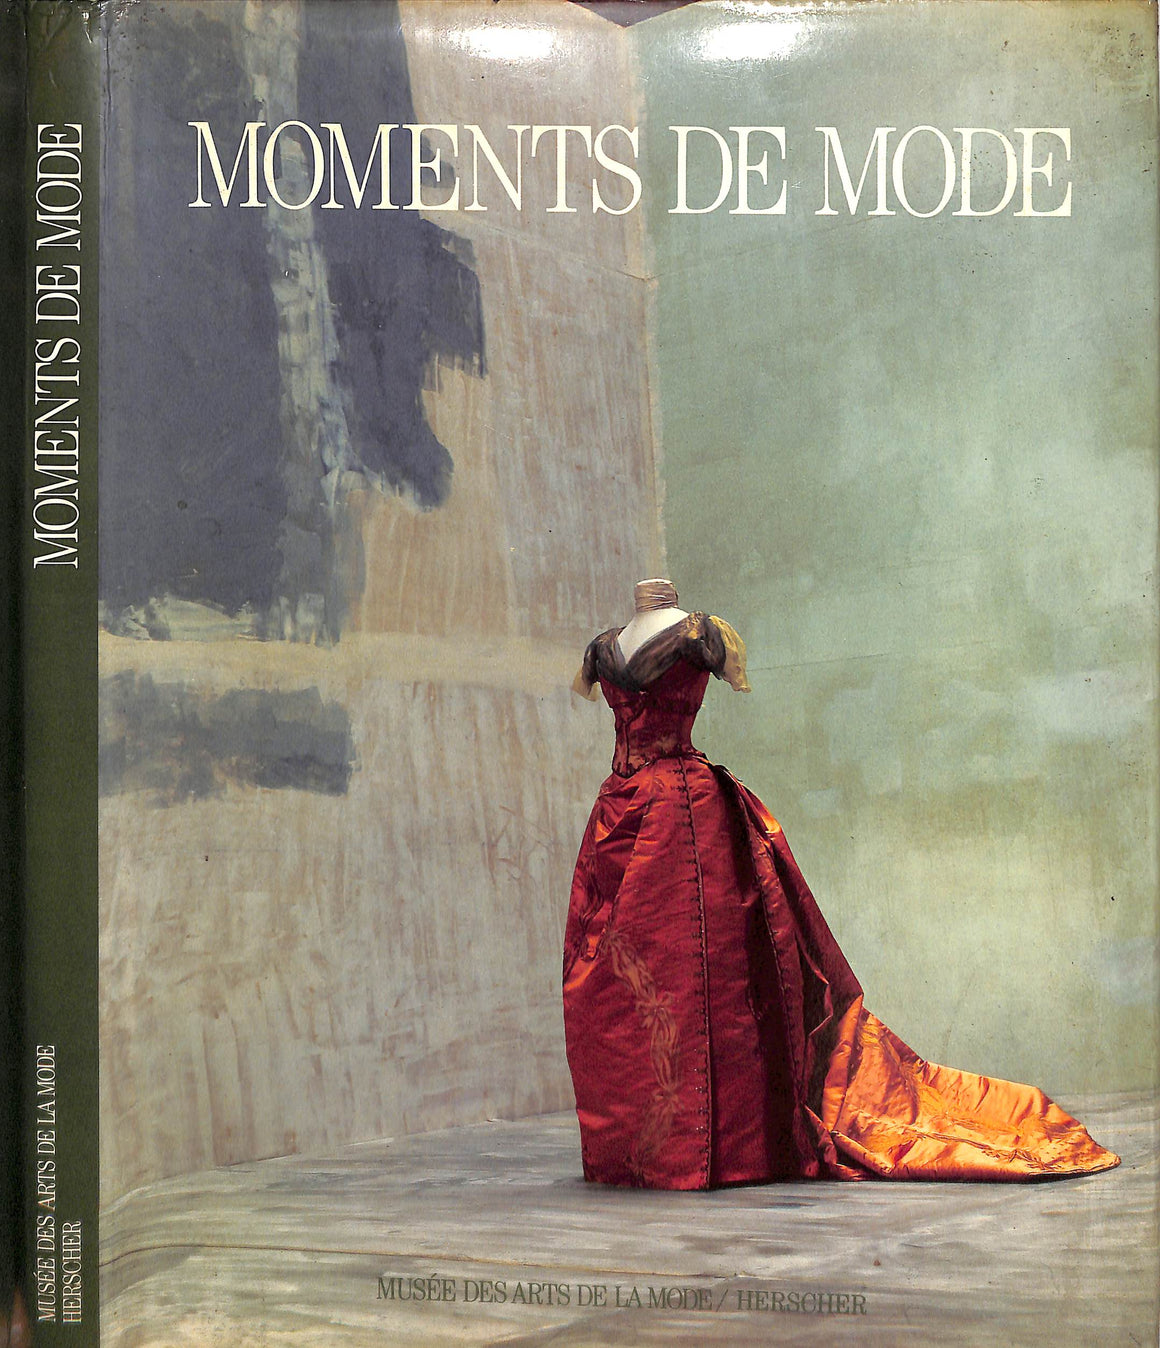 "Moments De Mode" 1986 FERNANDEZ, Dominique, MAURIES, Patrick, and NOURISSIER, Francois